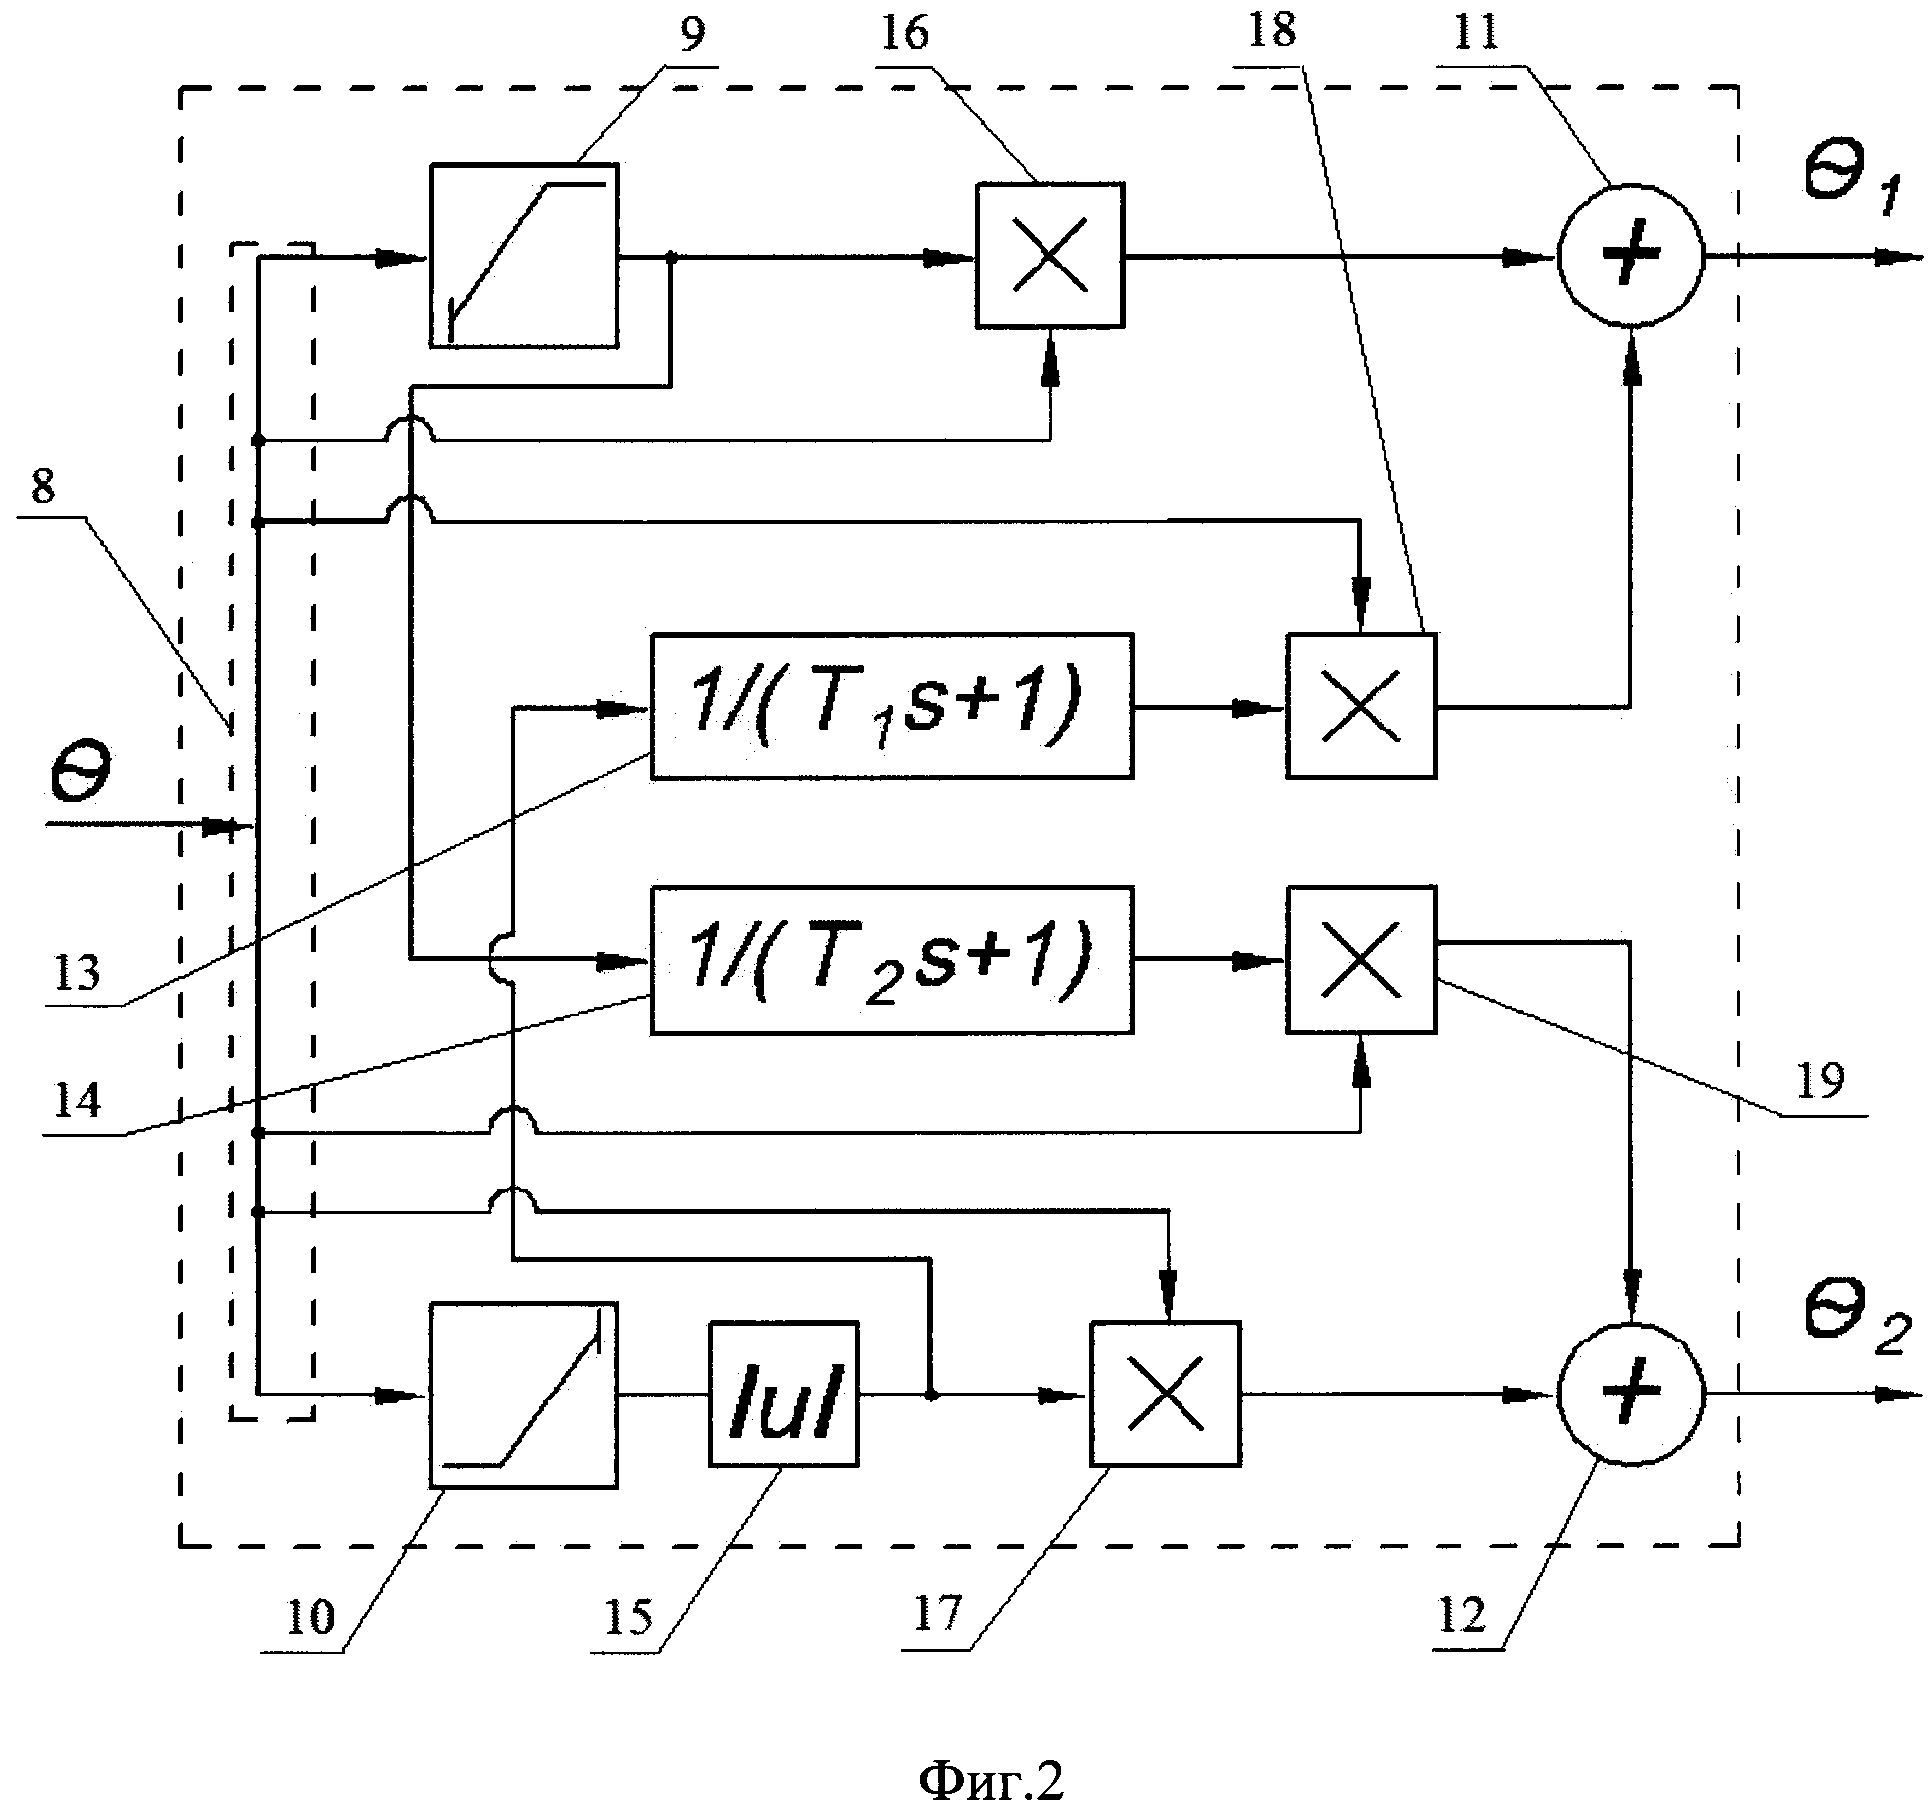 Способ и устройство выборки люфта в кинематической передаче опорно-поворотного устройства с двумя взаимосвязанными электроприводами